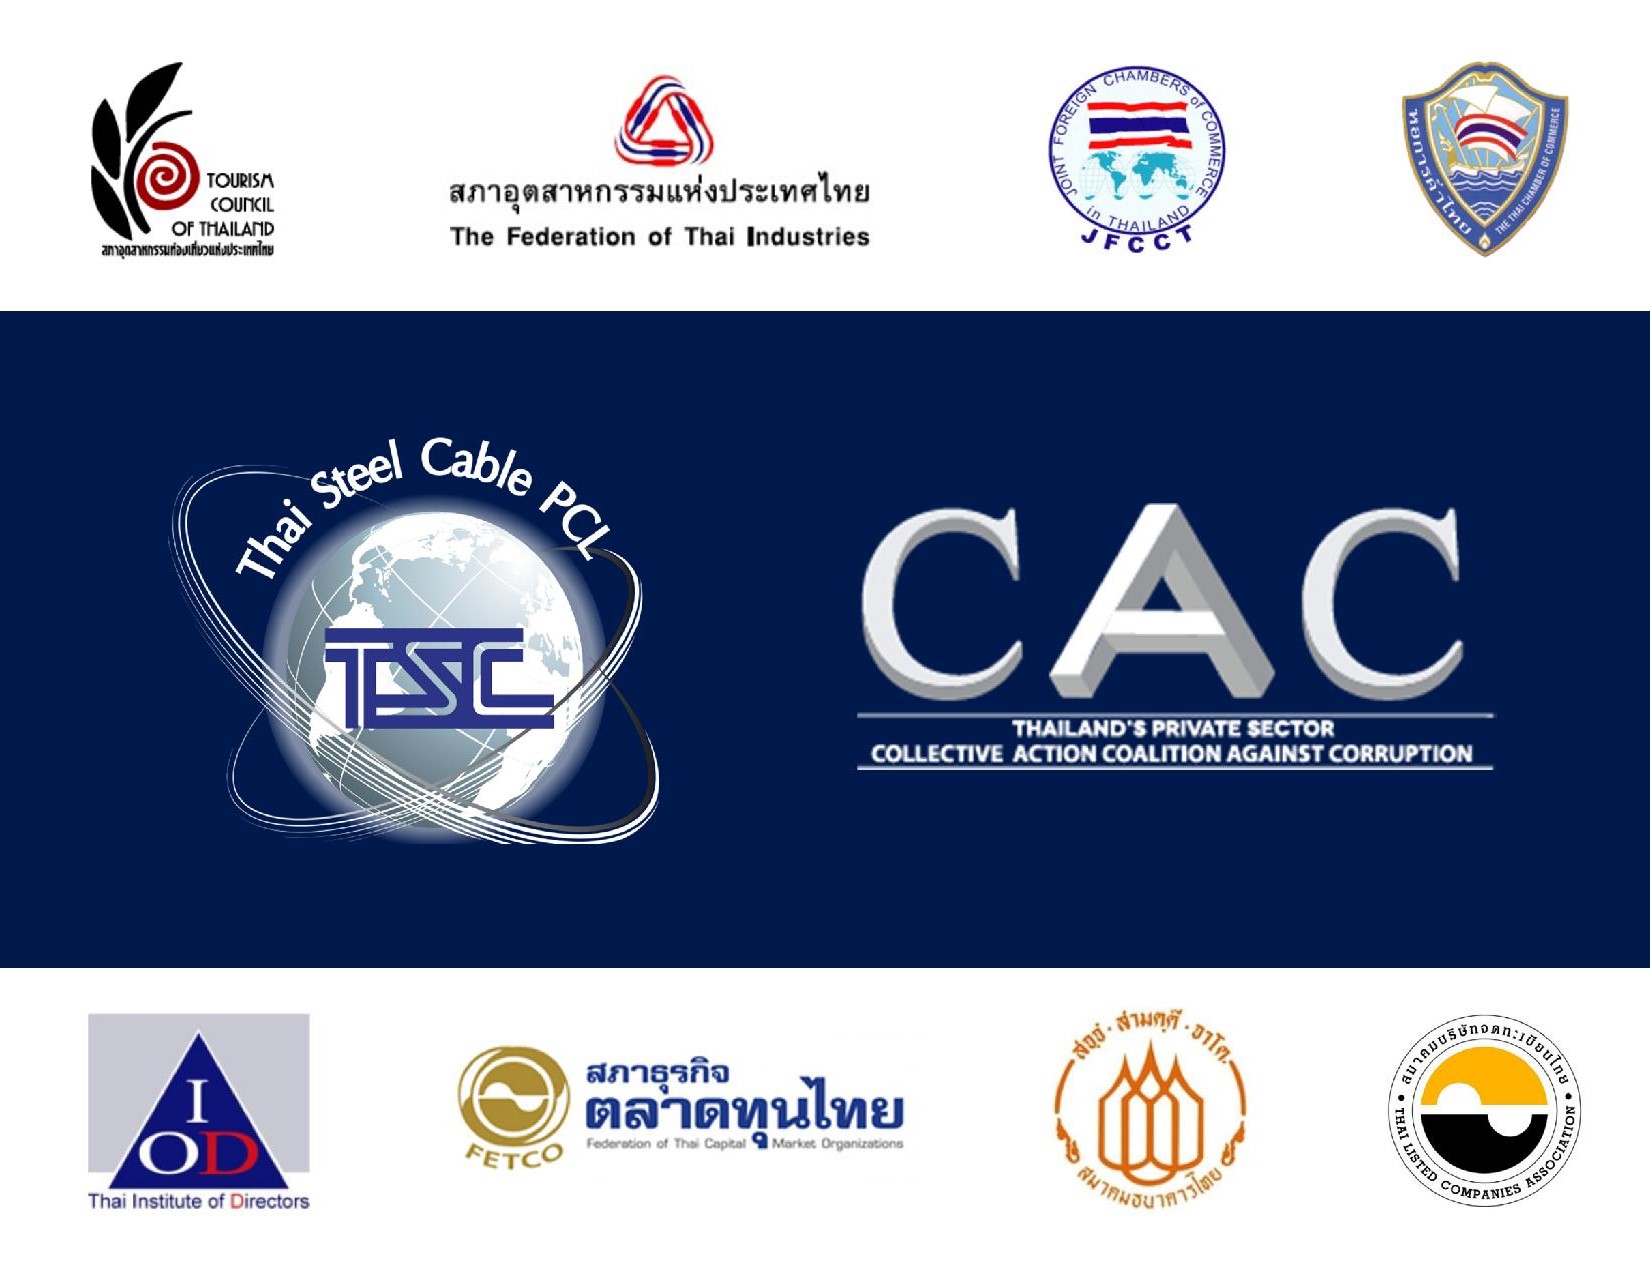   TSC ได้รับการรับรองเป็นสมาชิกแนวร่วมปฏิบัติของภาคเอกชนไทยในการต่อต้านทุจริต